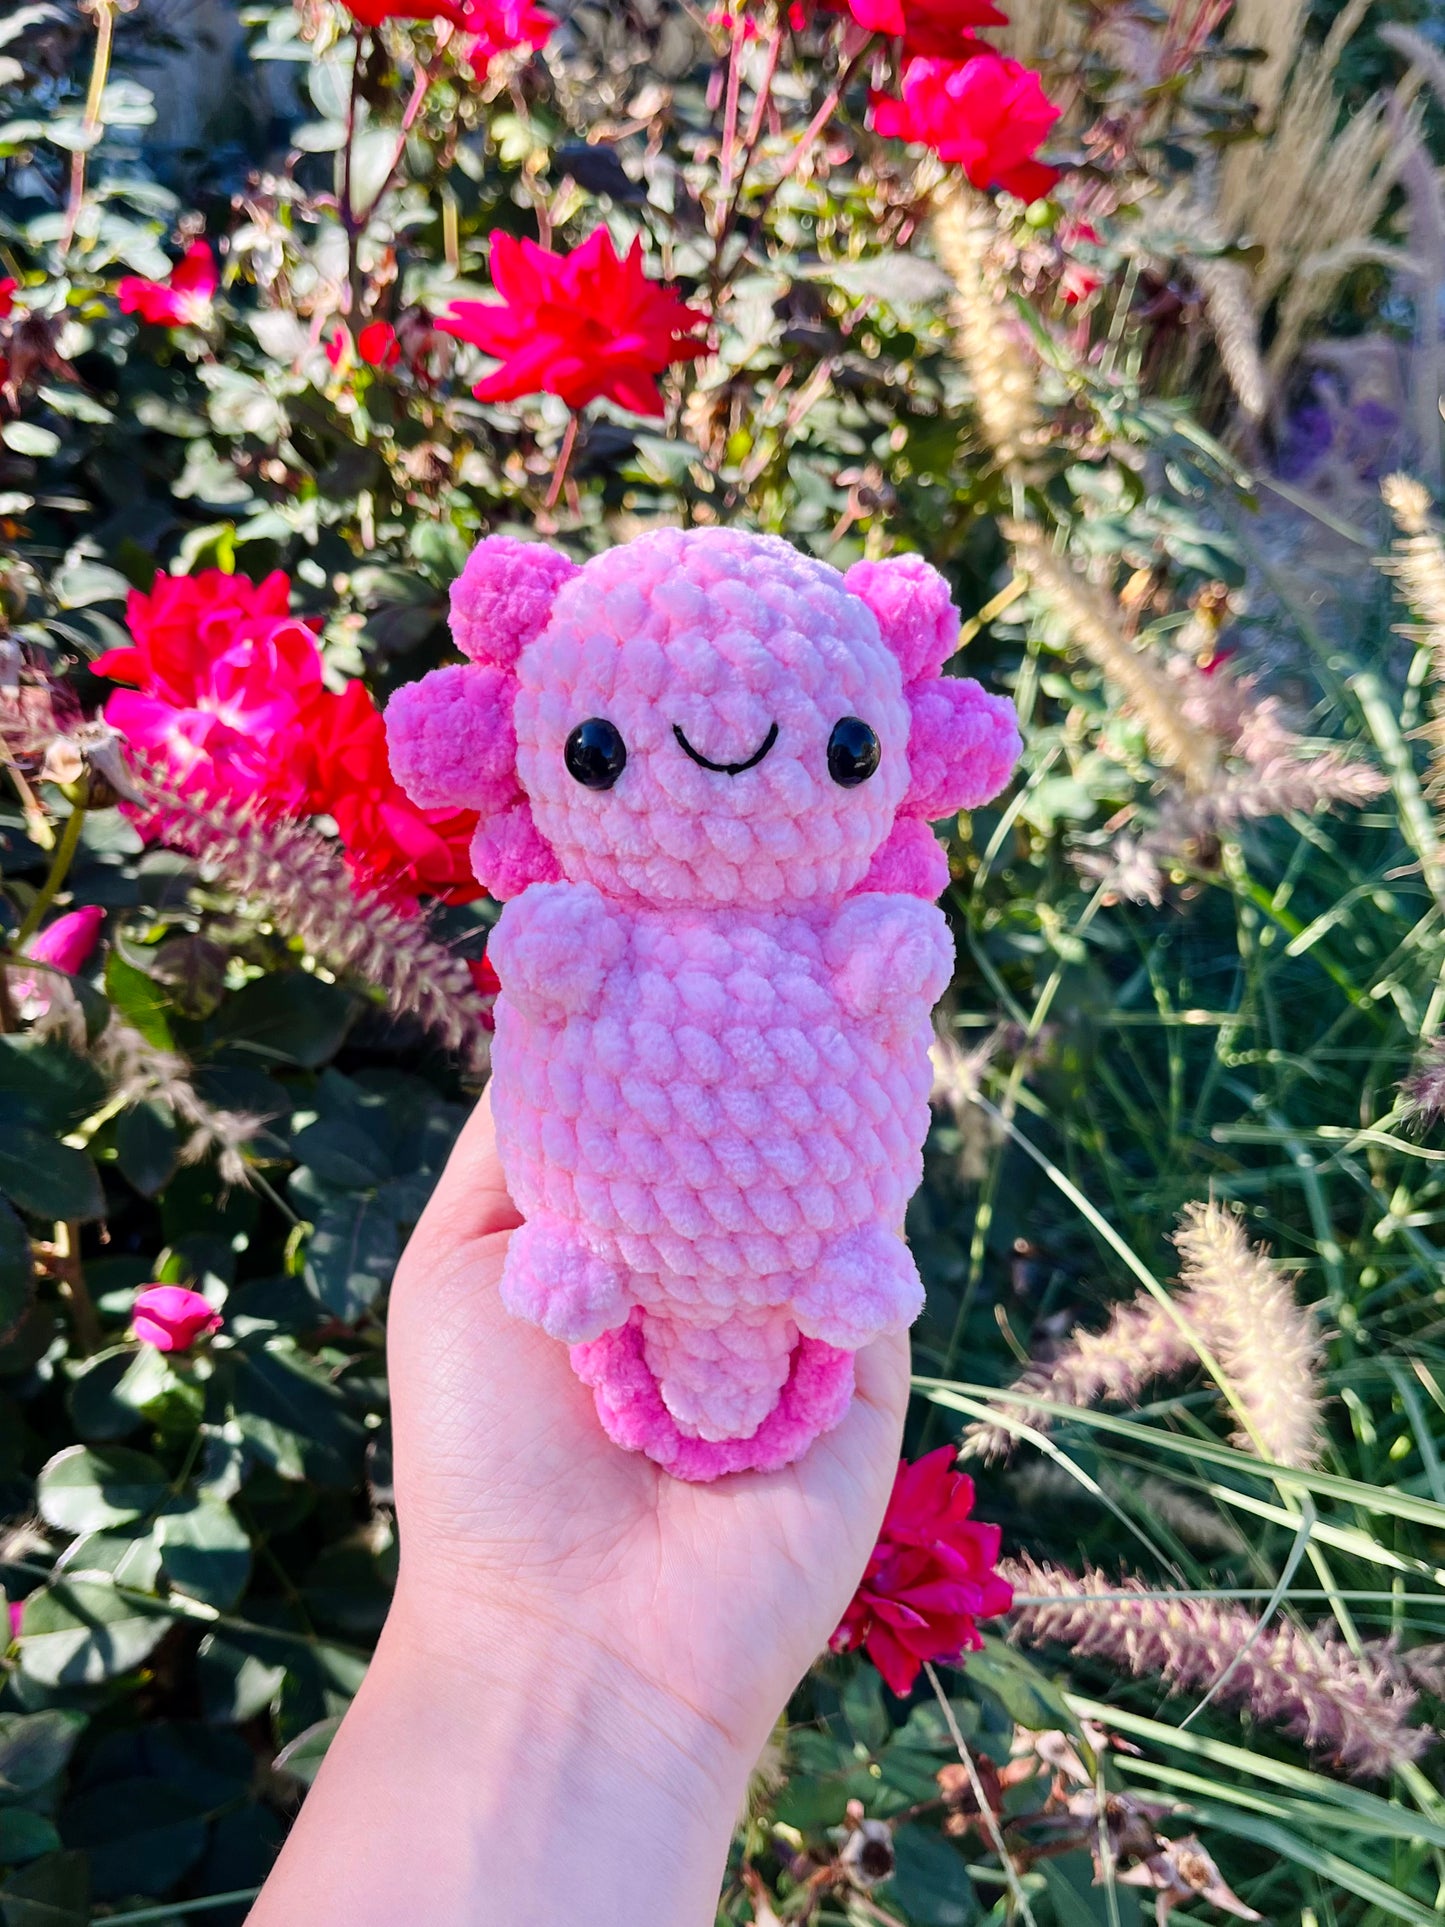 Crochet Pink Baby Axolotl